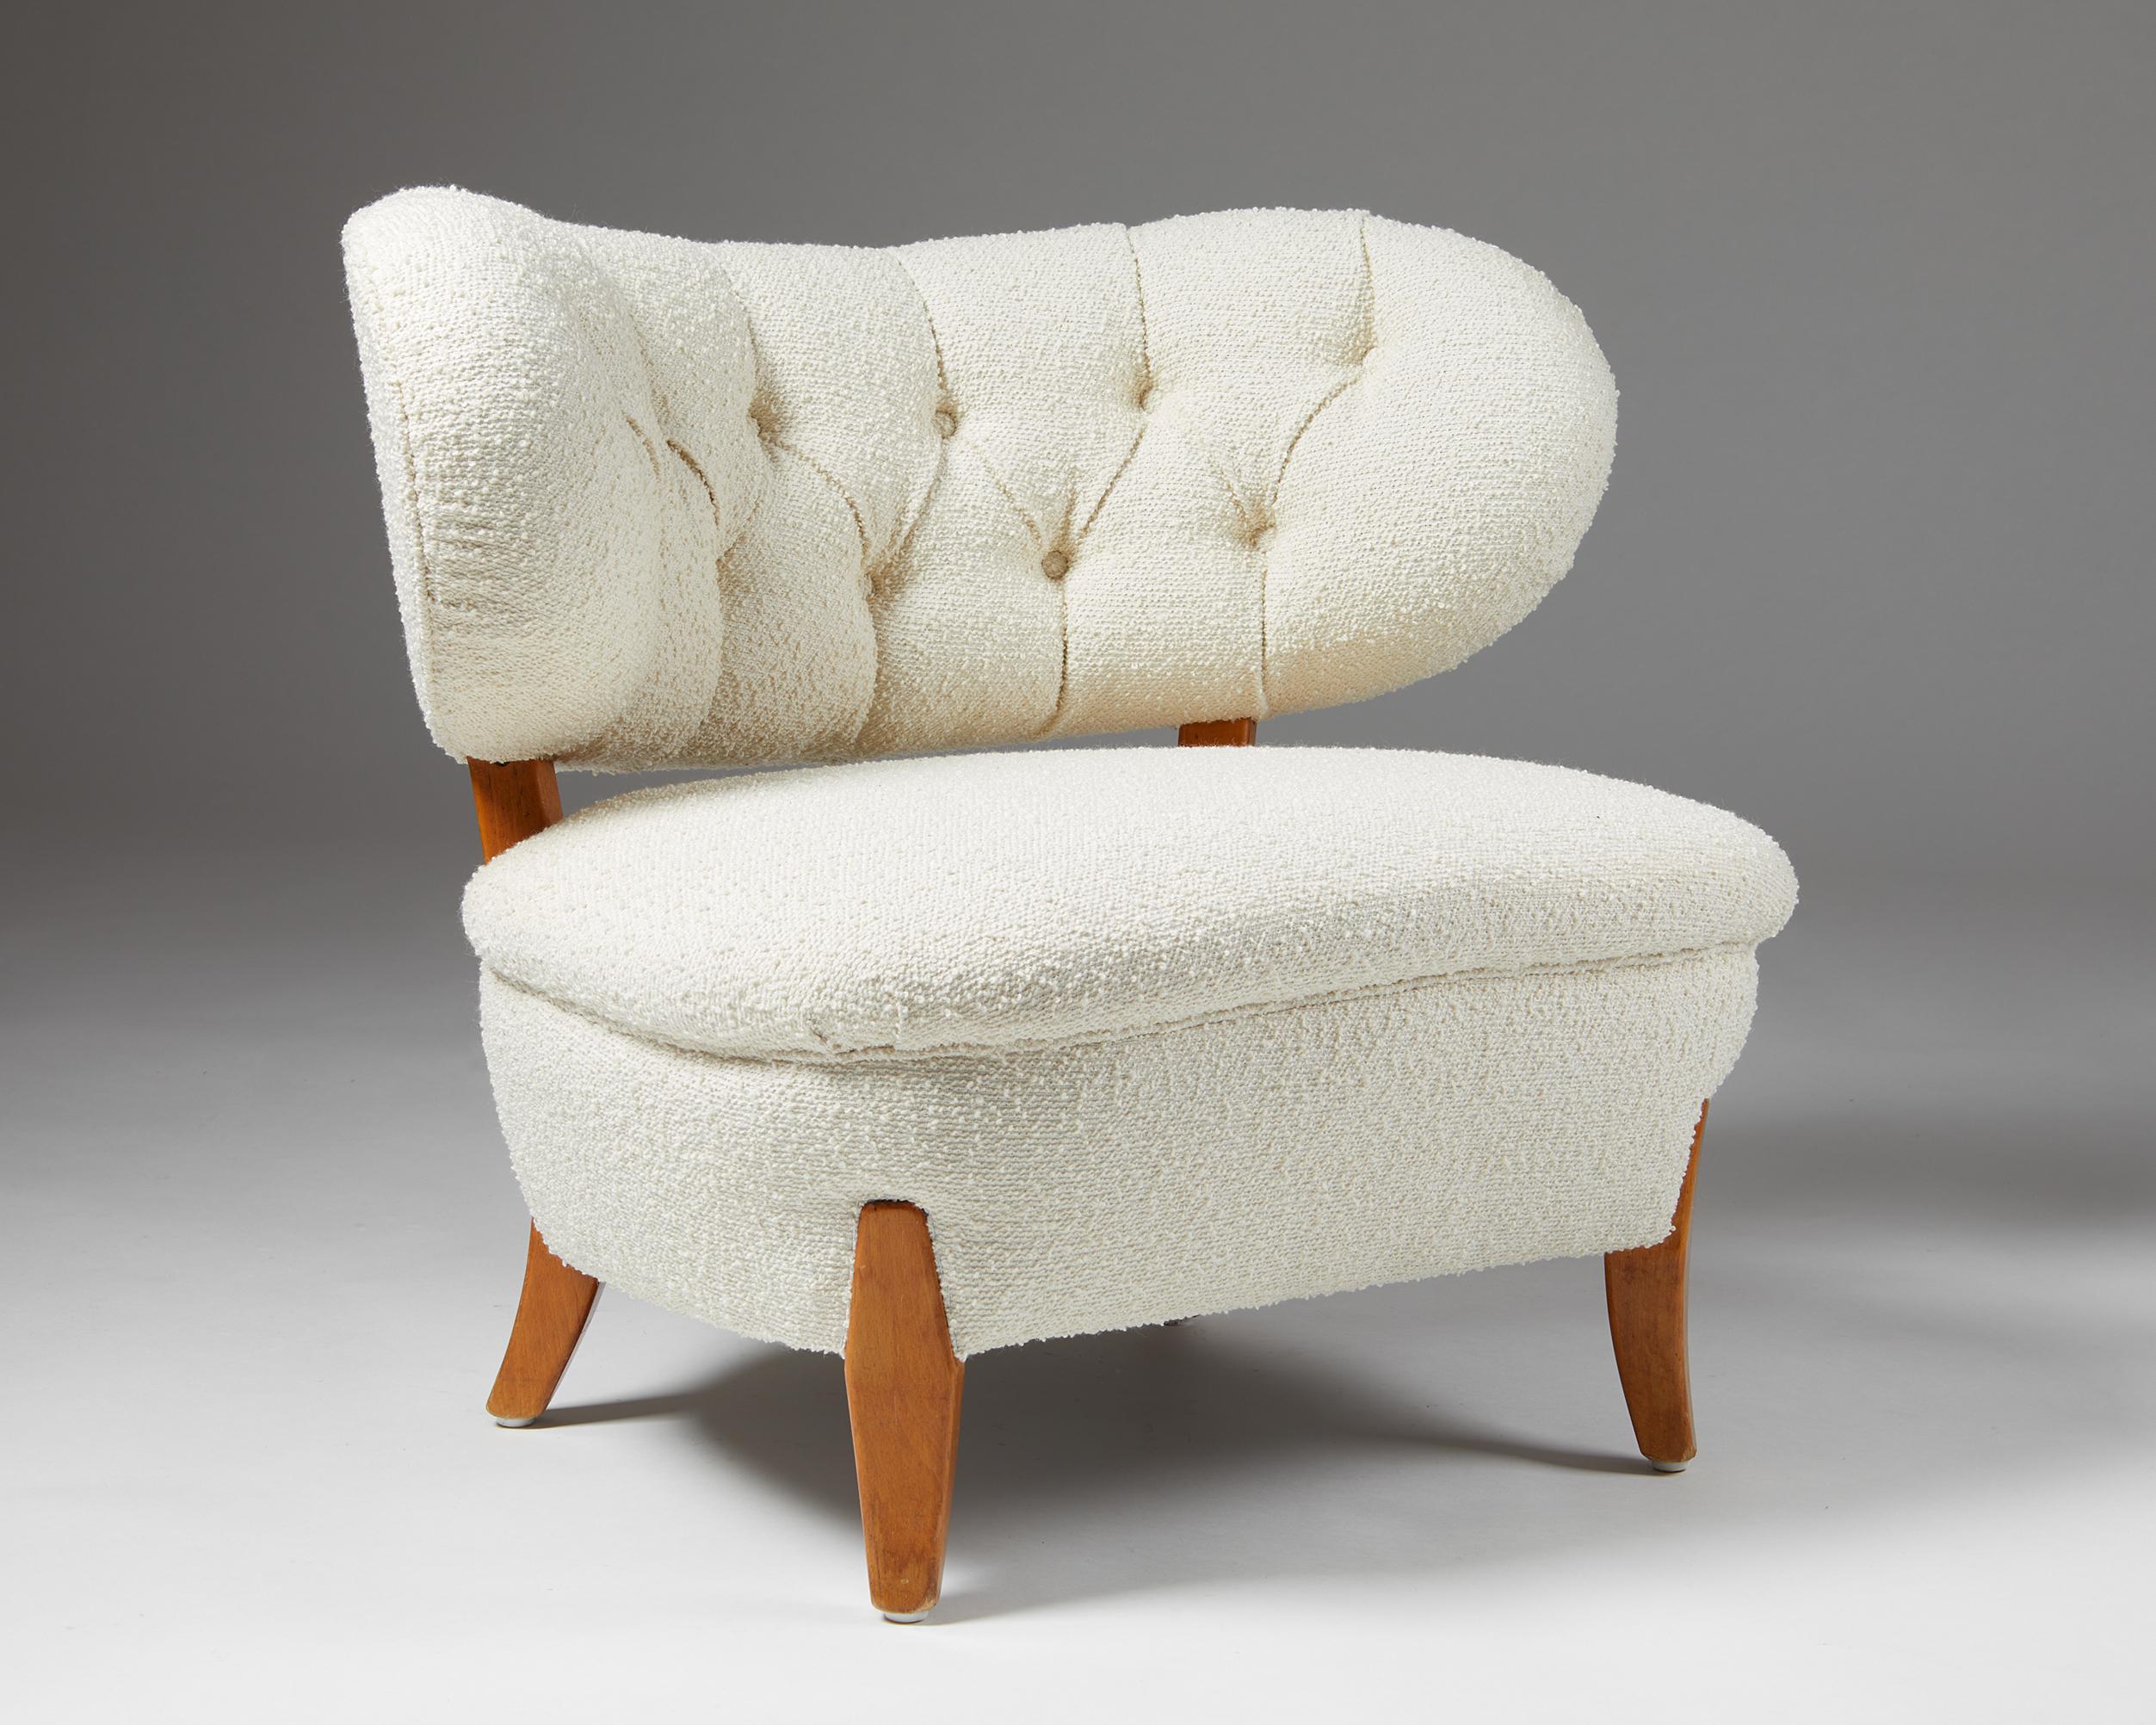 Fauteuil conçu par Otto Shulz pour Boet,
Suède. 1940s.
Revêtement en laine et bois laqué.

Ce modèle de chaise est un bel exemple du design d'Otto Schulz. Il a été récemment retapissé dans le plus luxueux tissu Boucle par l'un des meilleurs